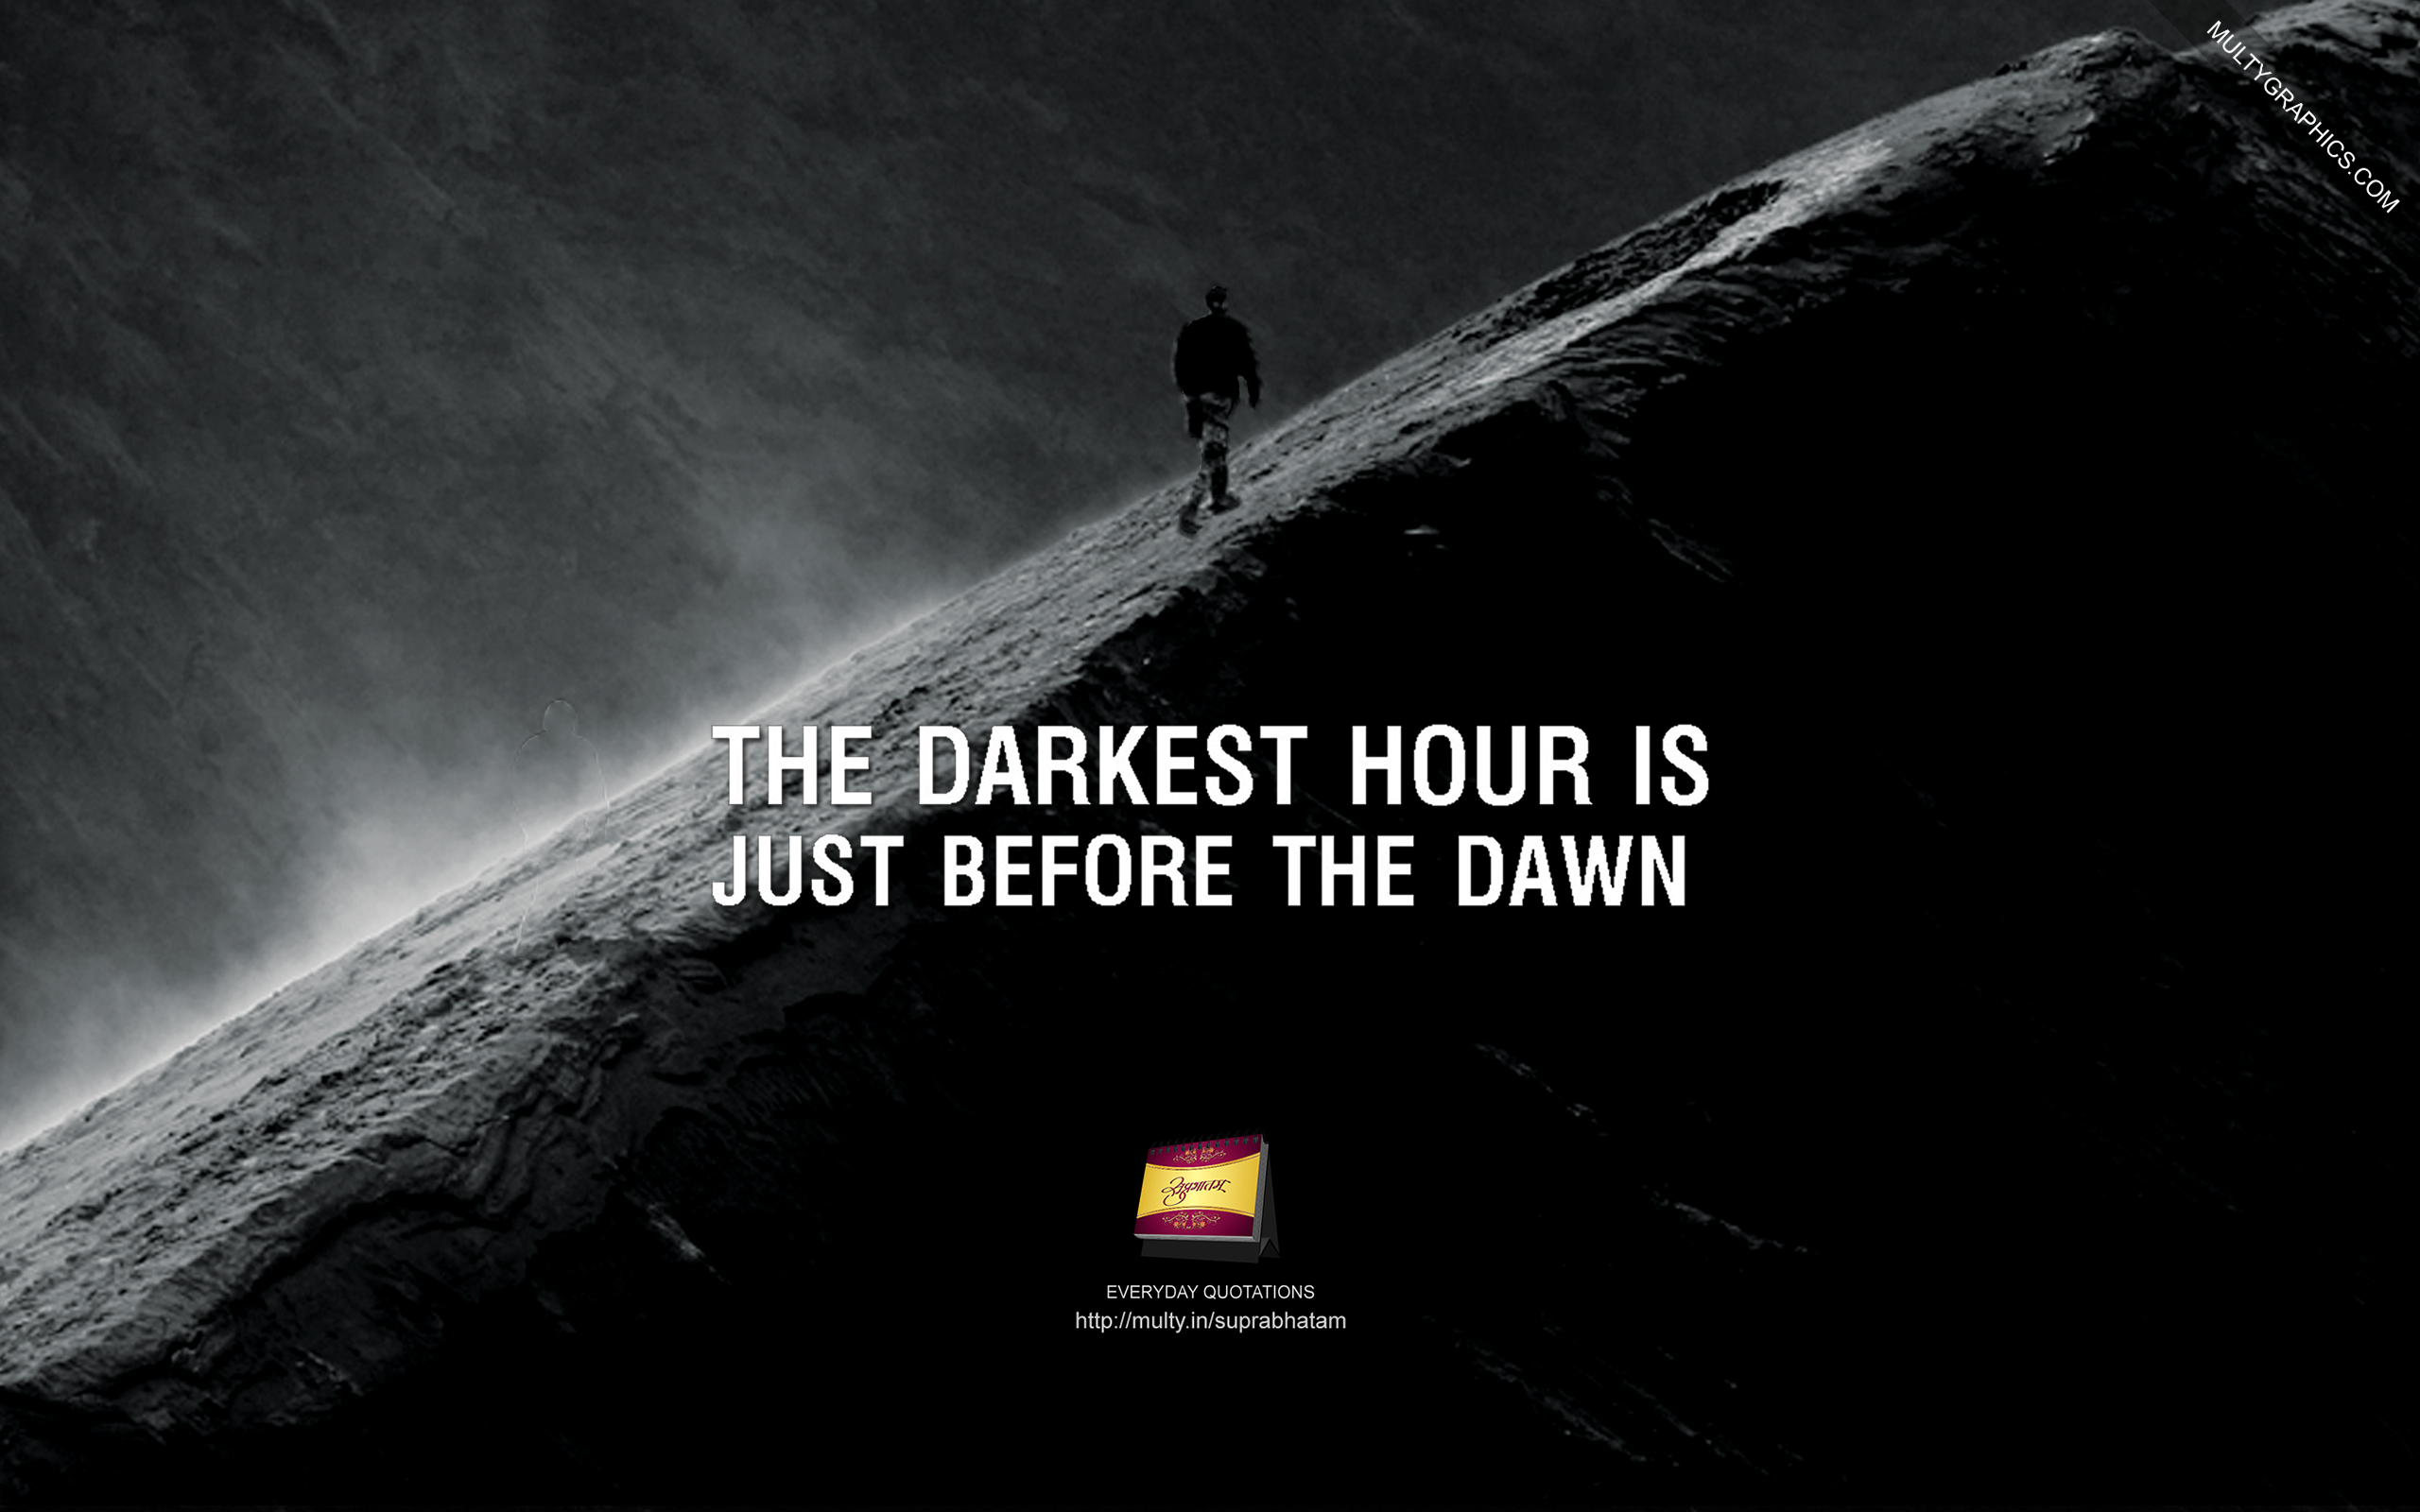 darkest before dawn